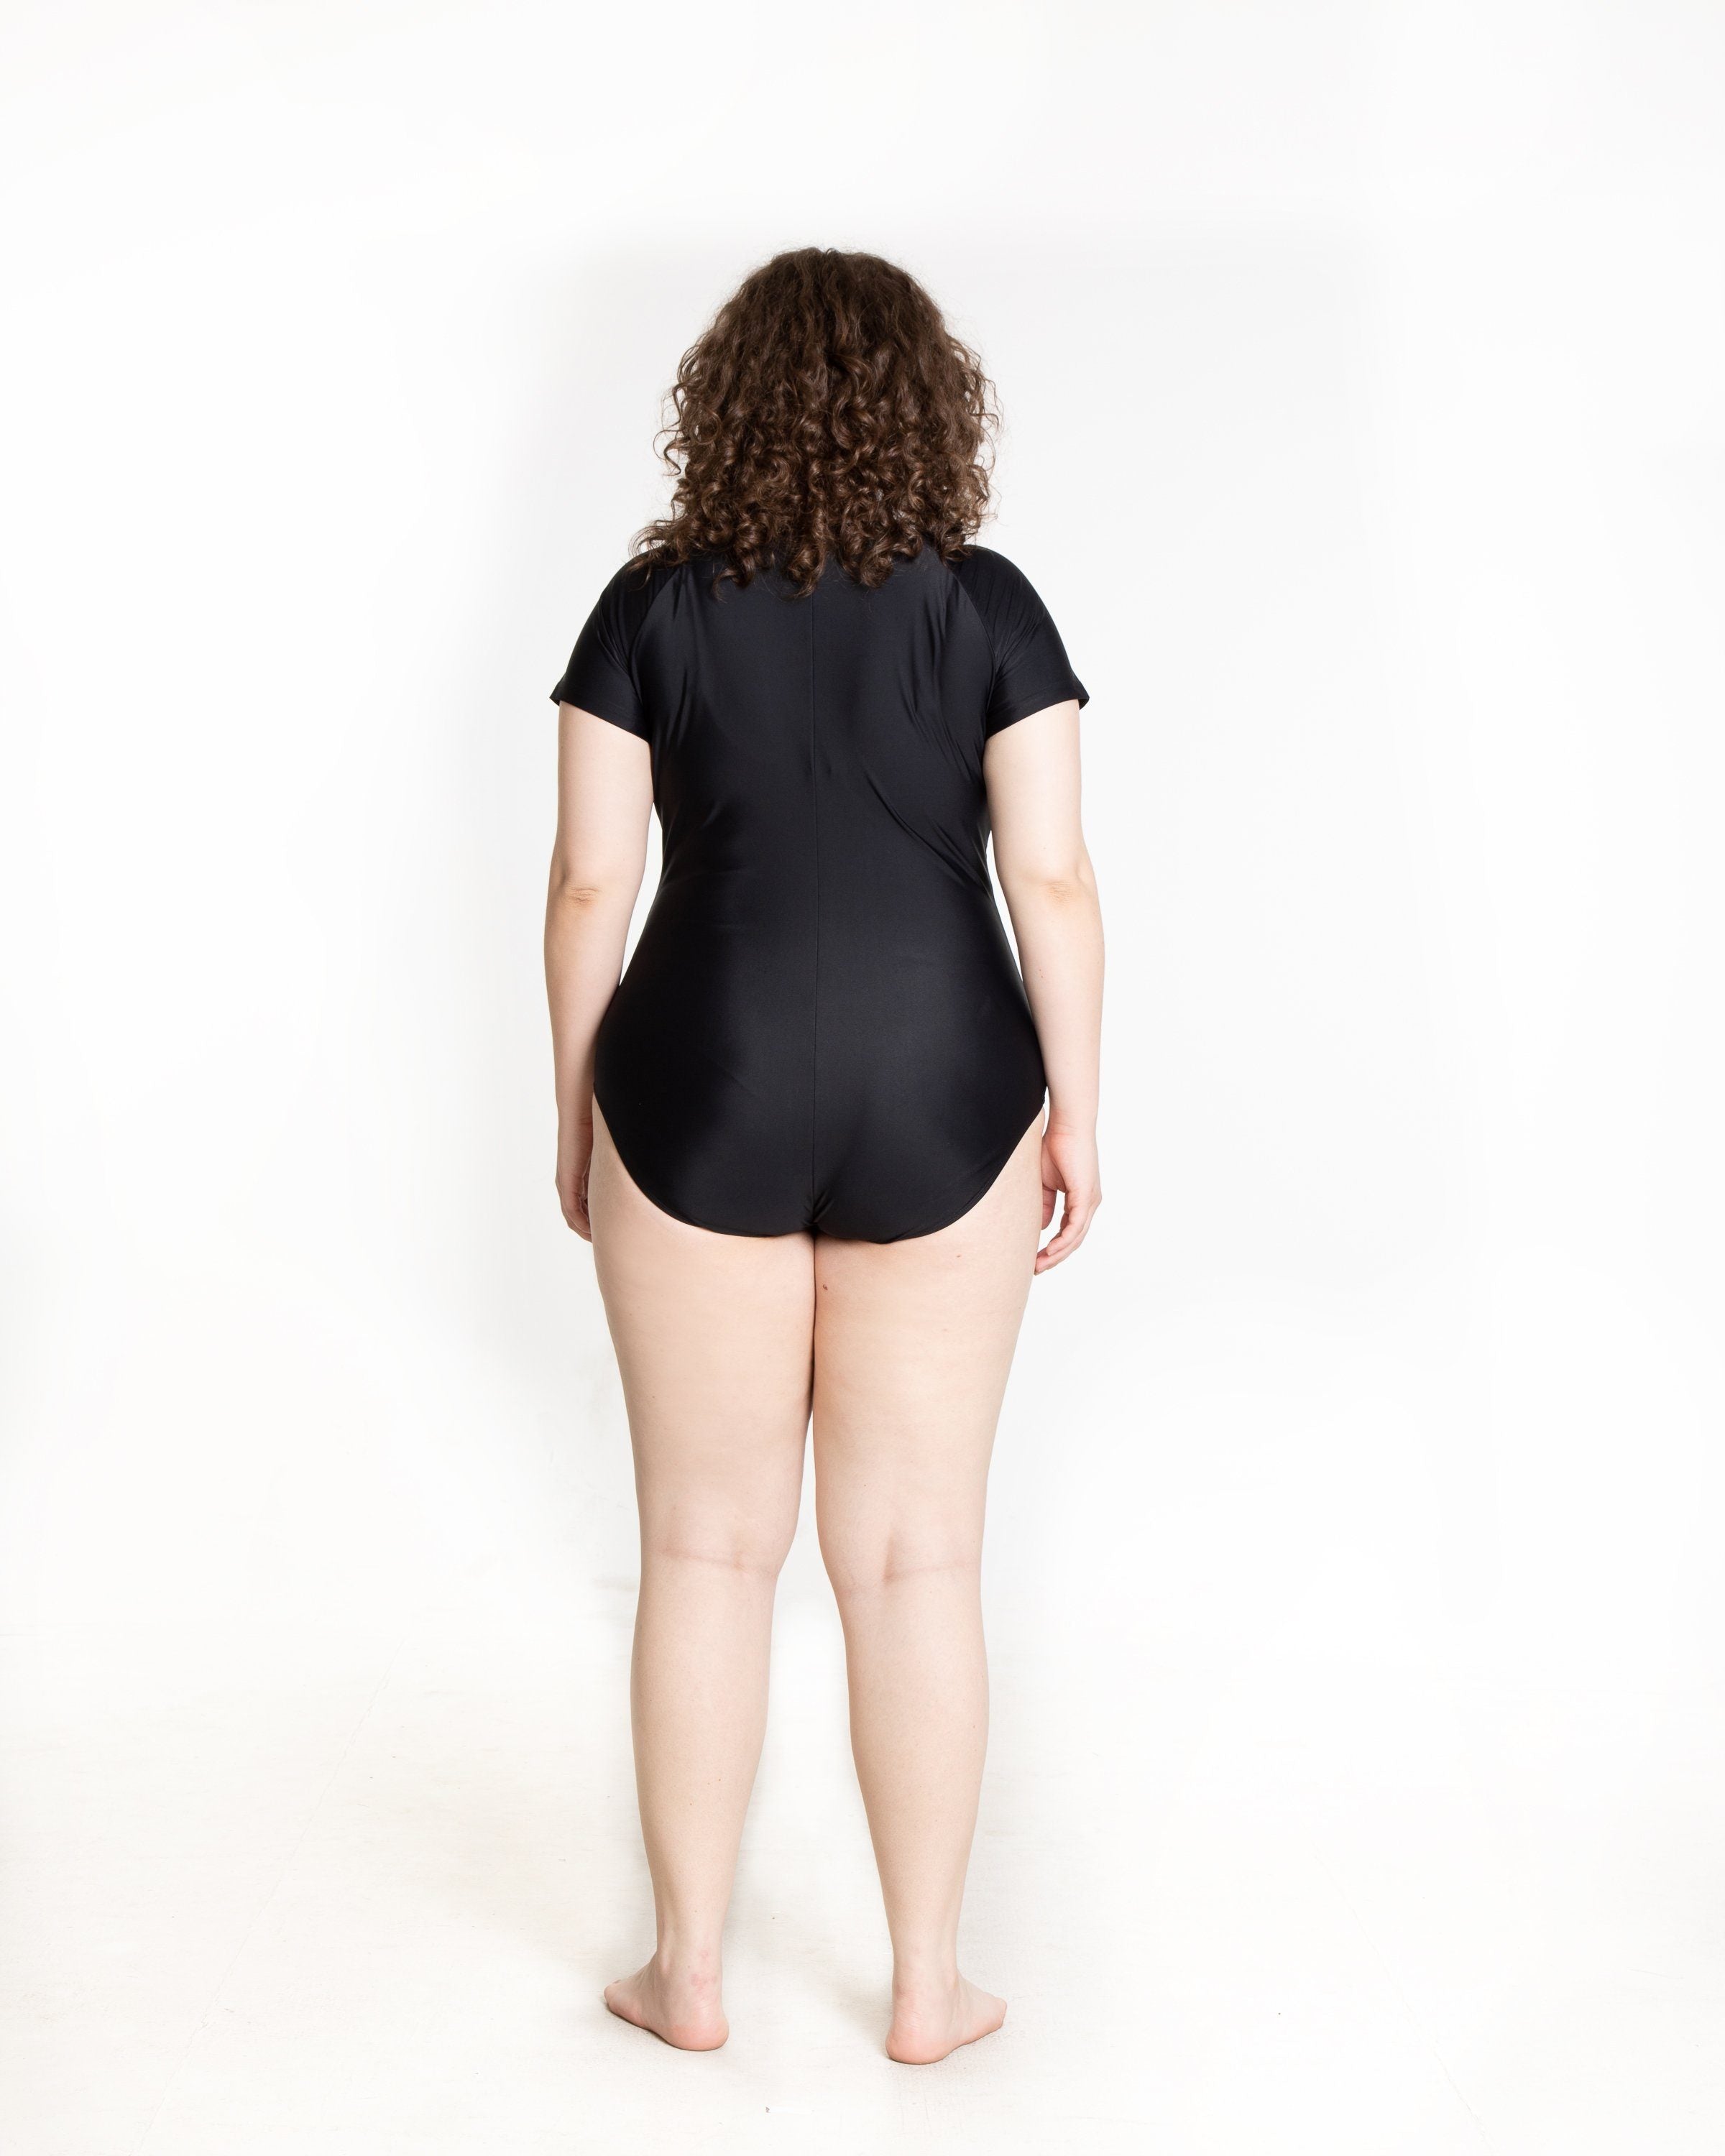 Short-Sleeved Swimsuit – Cover